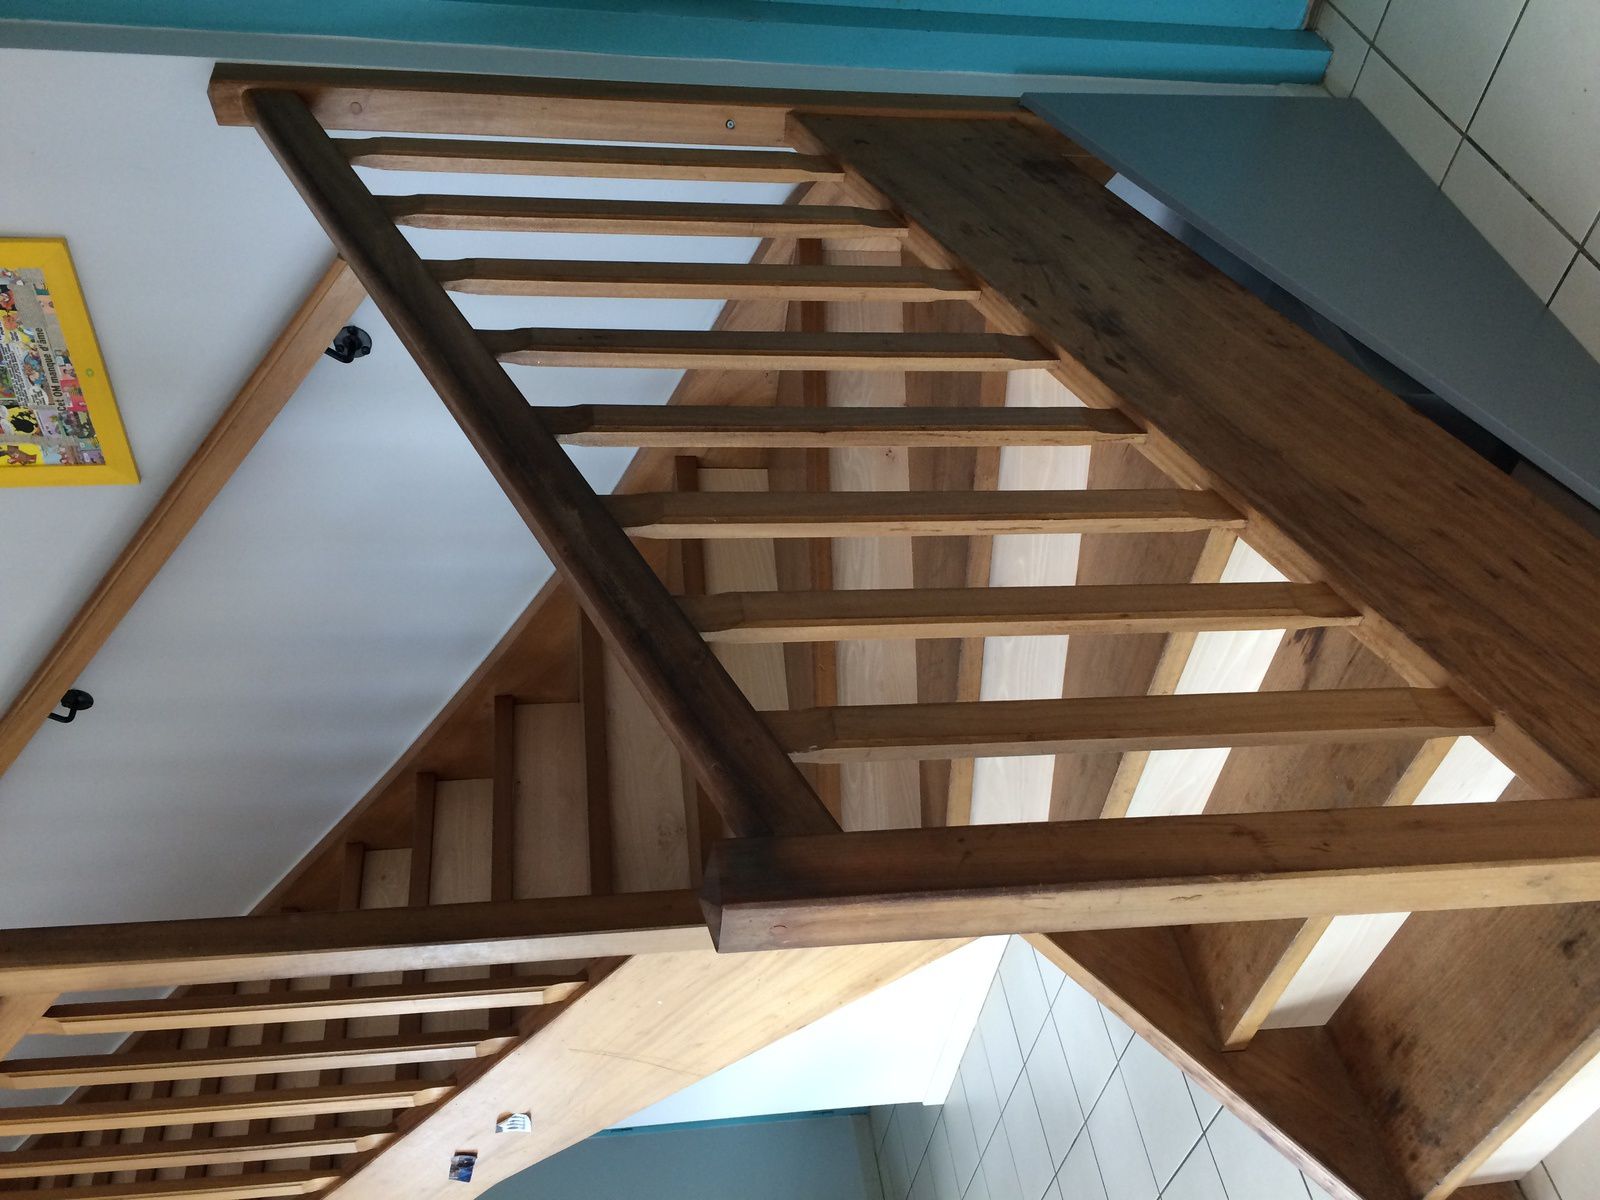 Agencement sous escalier, contres-marches, hêtre, lau bois créations, agencement sur mesure, fermeture escalier